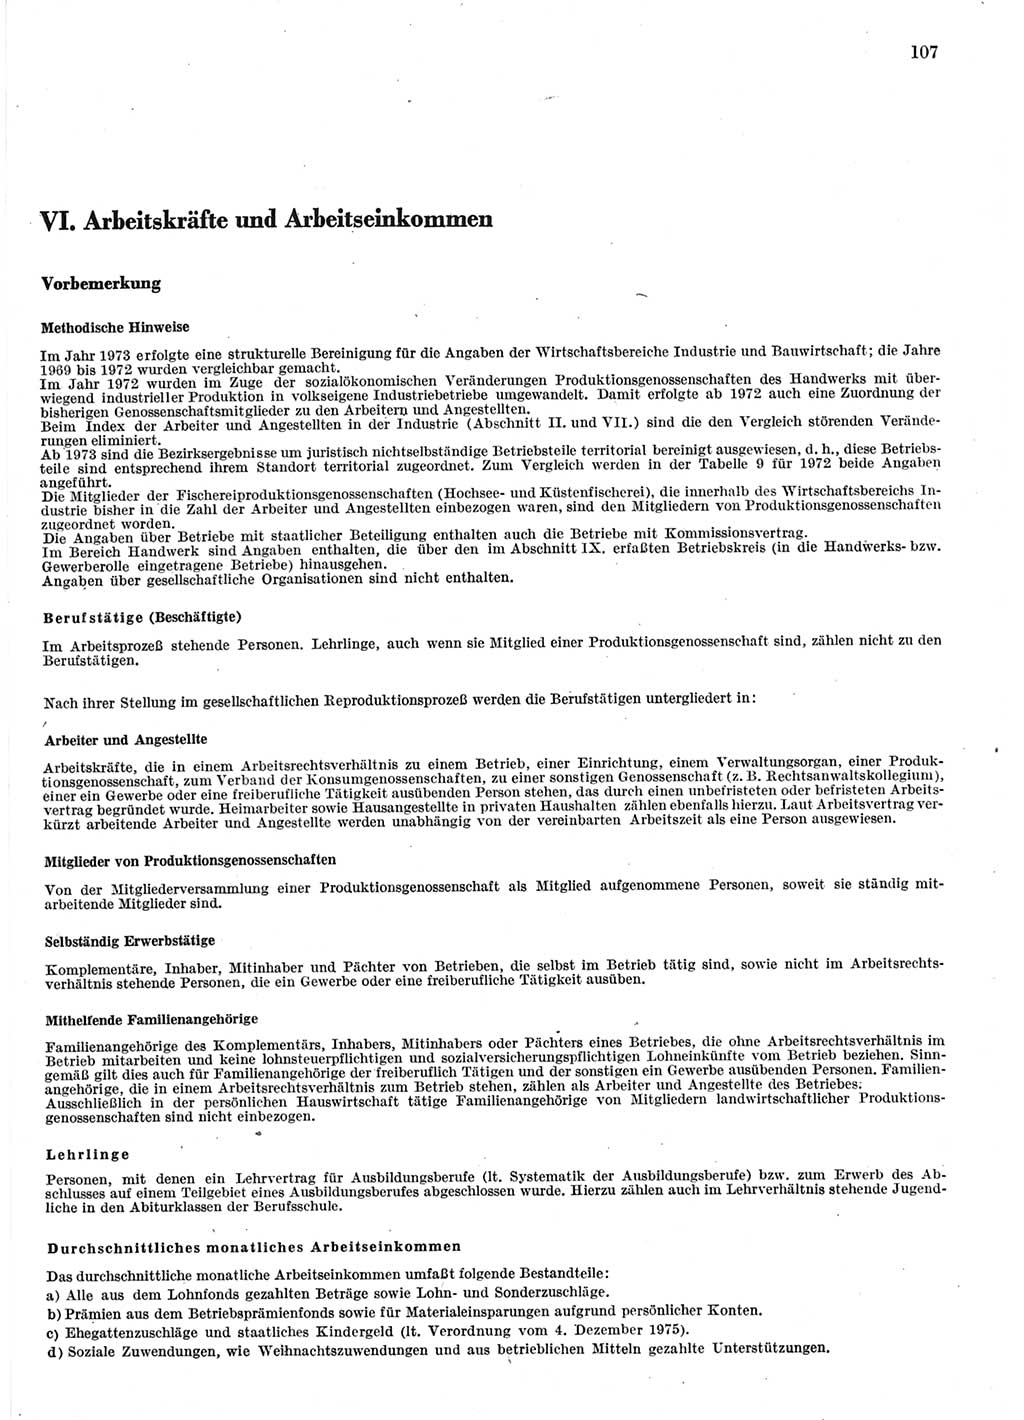 Statistisches Jahrbuch der Deutschen Demokratischen Republik (DDR) 1983, Seite 107 (Stat. Jb. DDR 1983, S. 107)